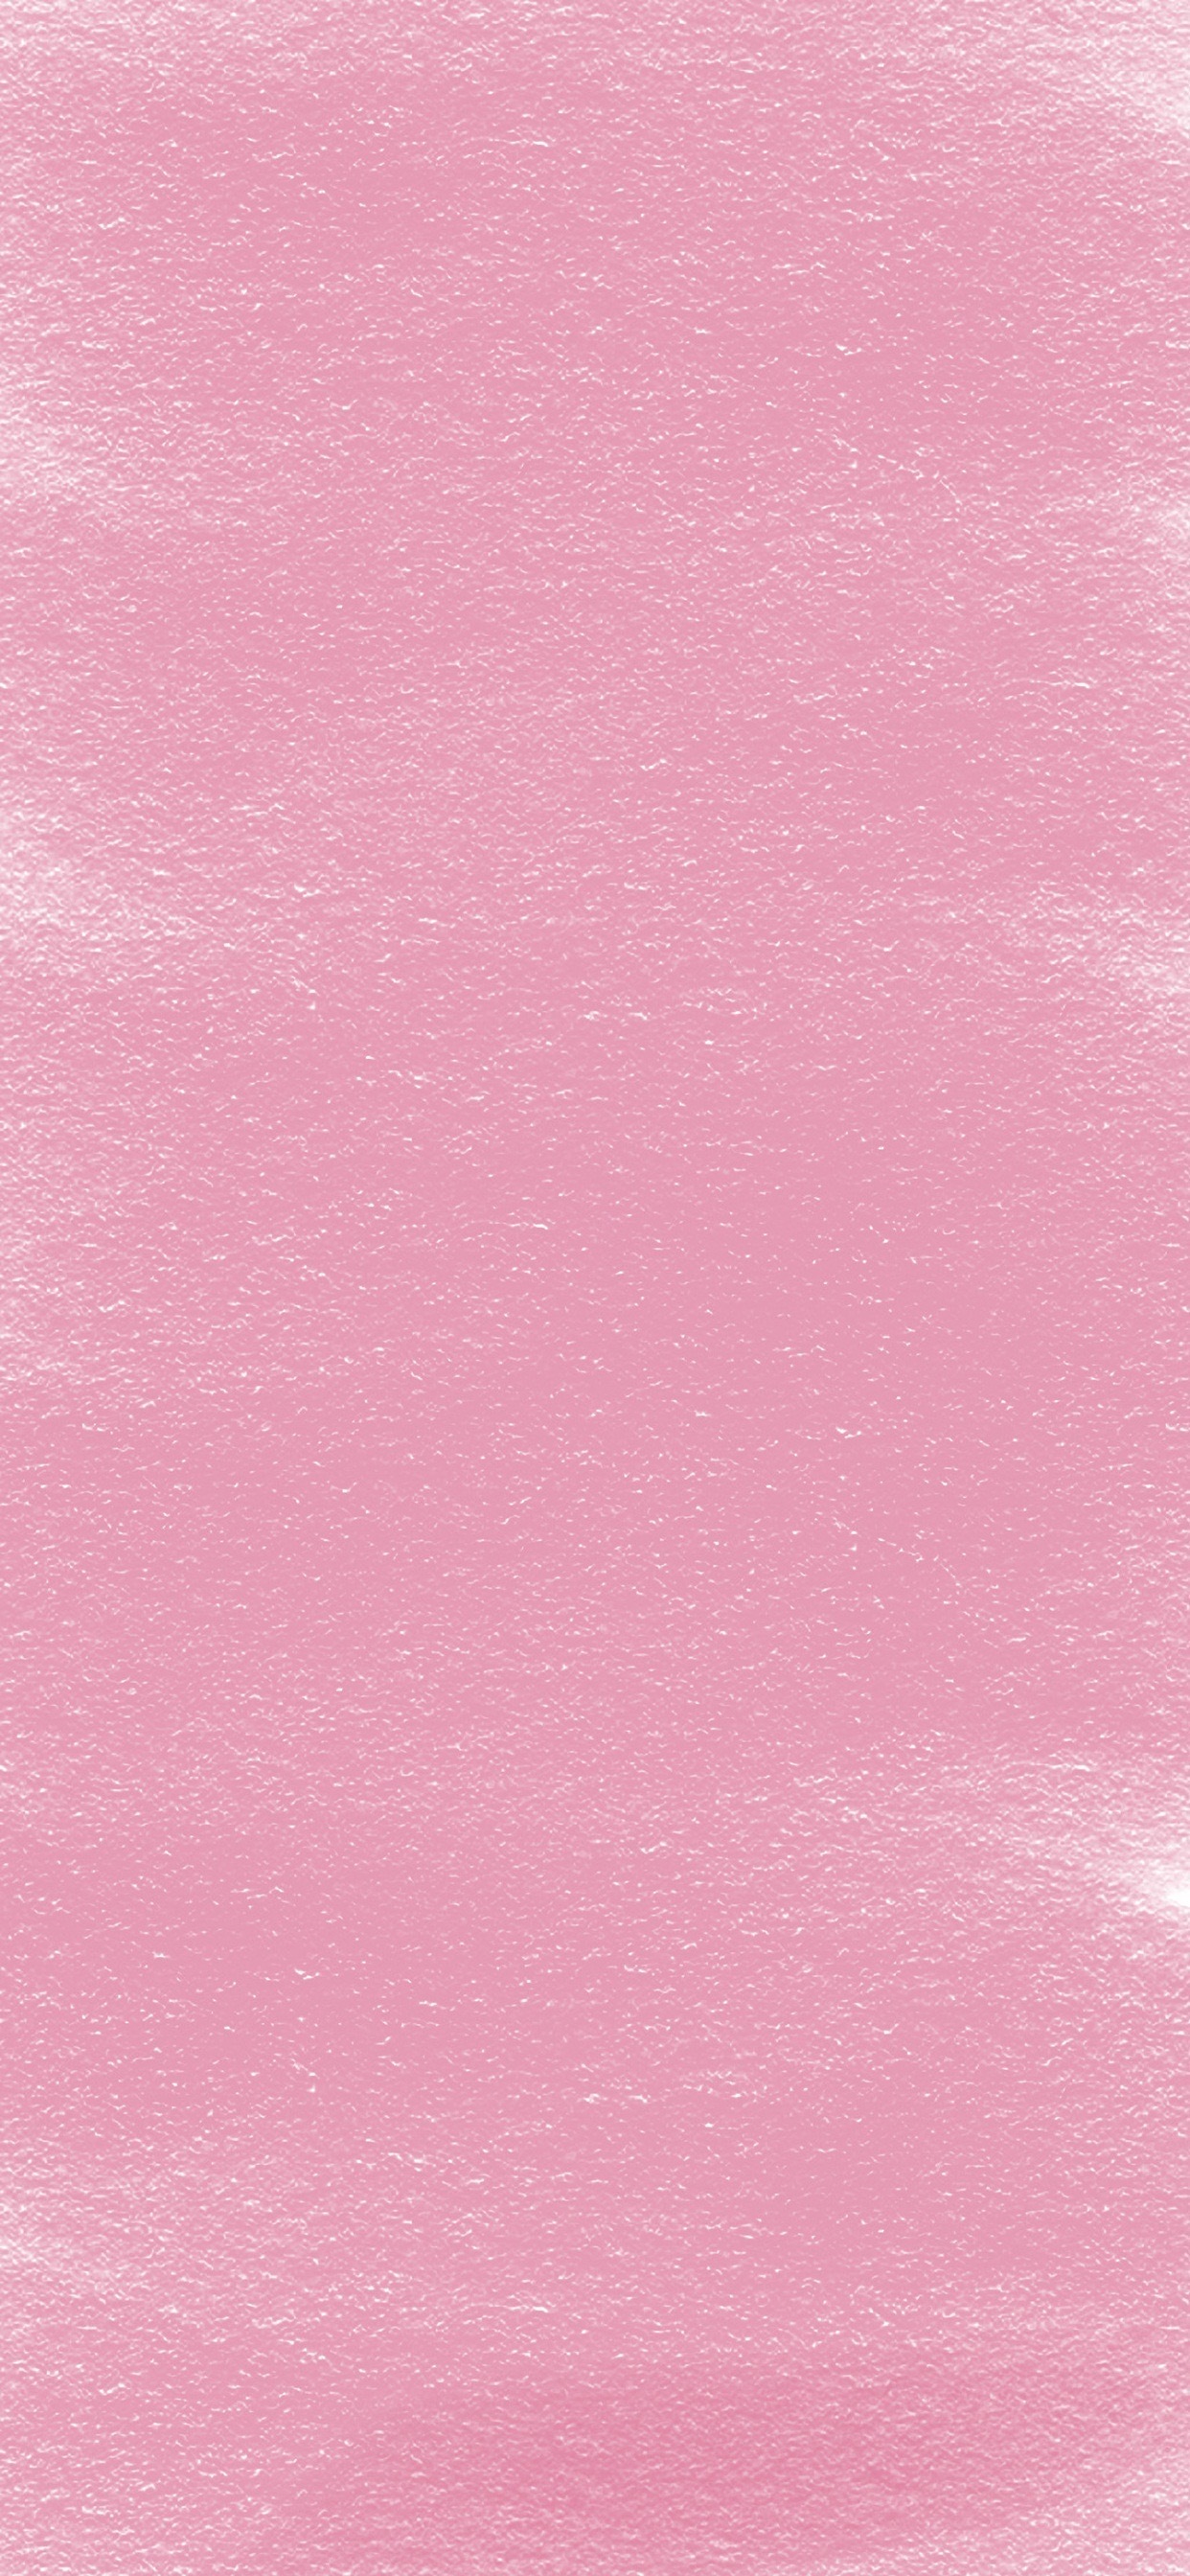 淡粉色背景图 纯色图片